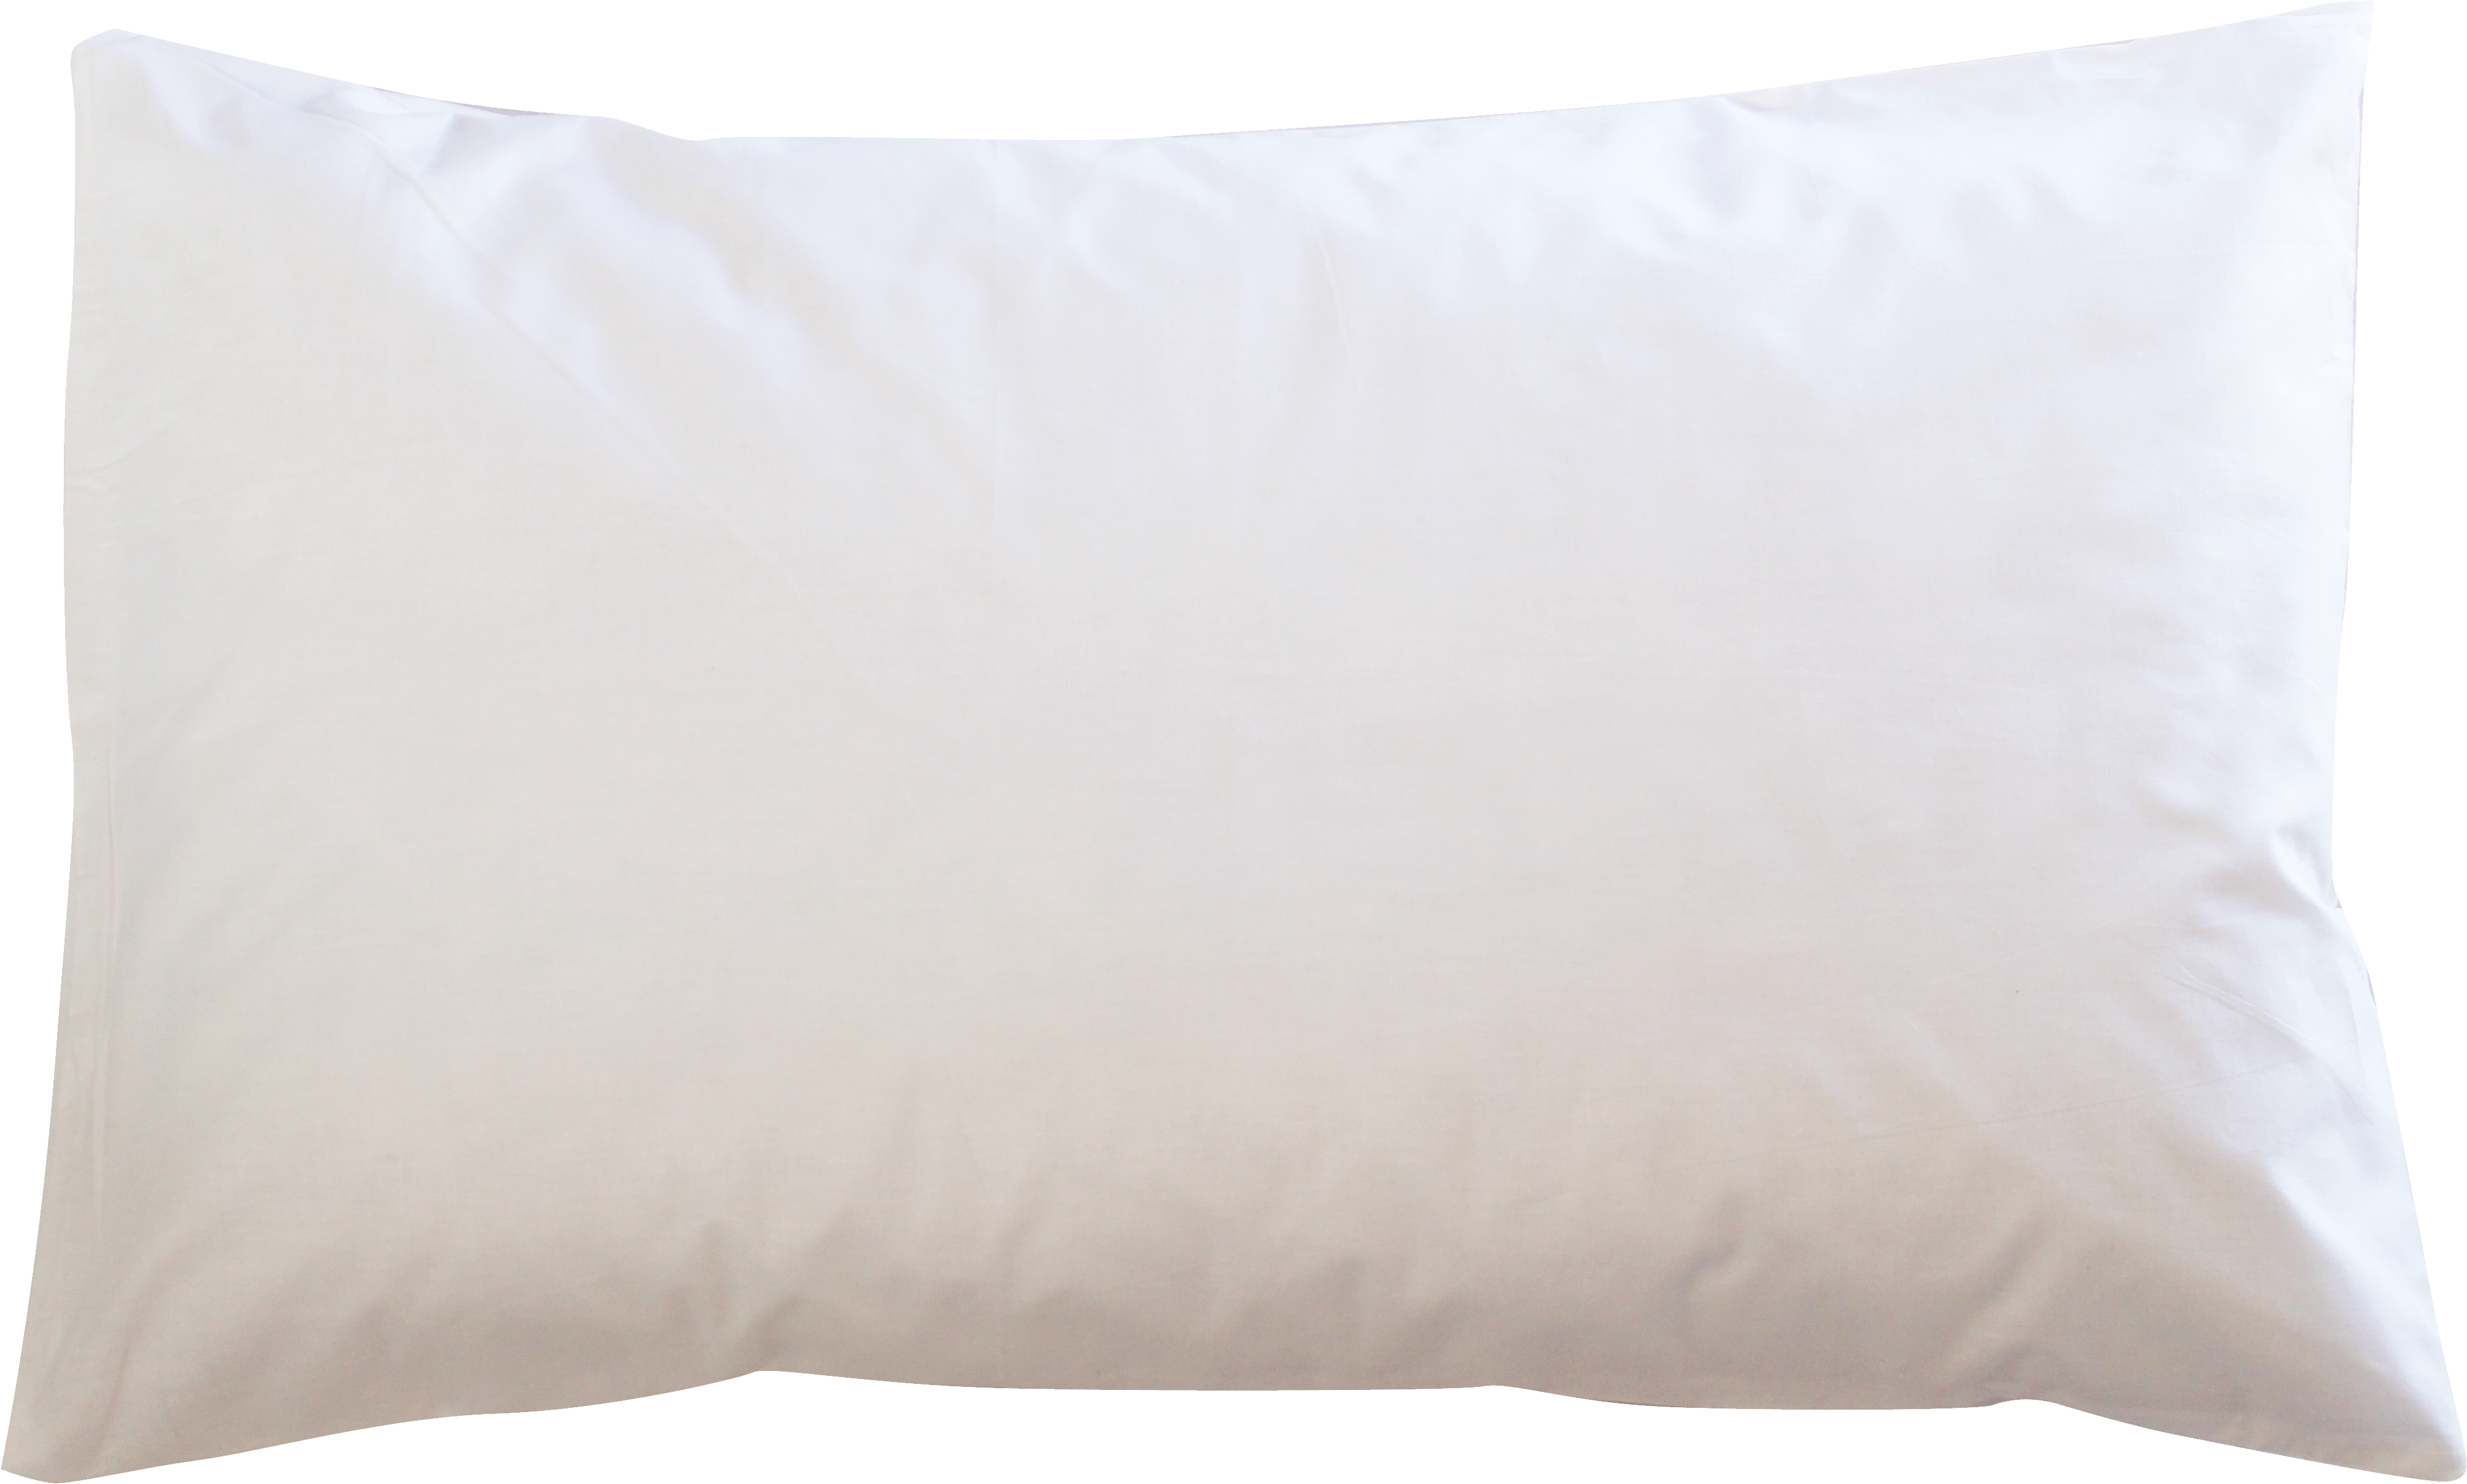 White Cushion PNG Image Background